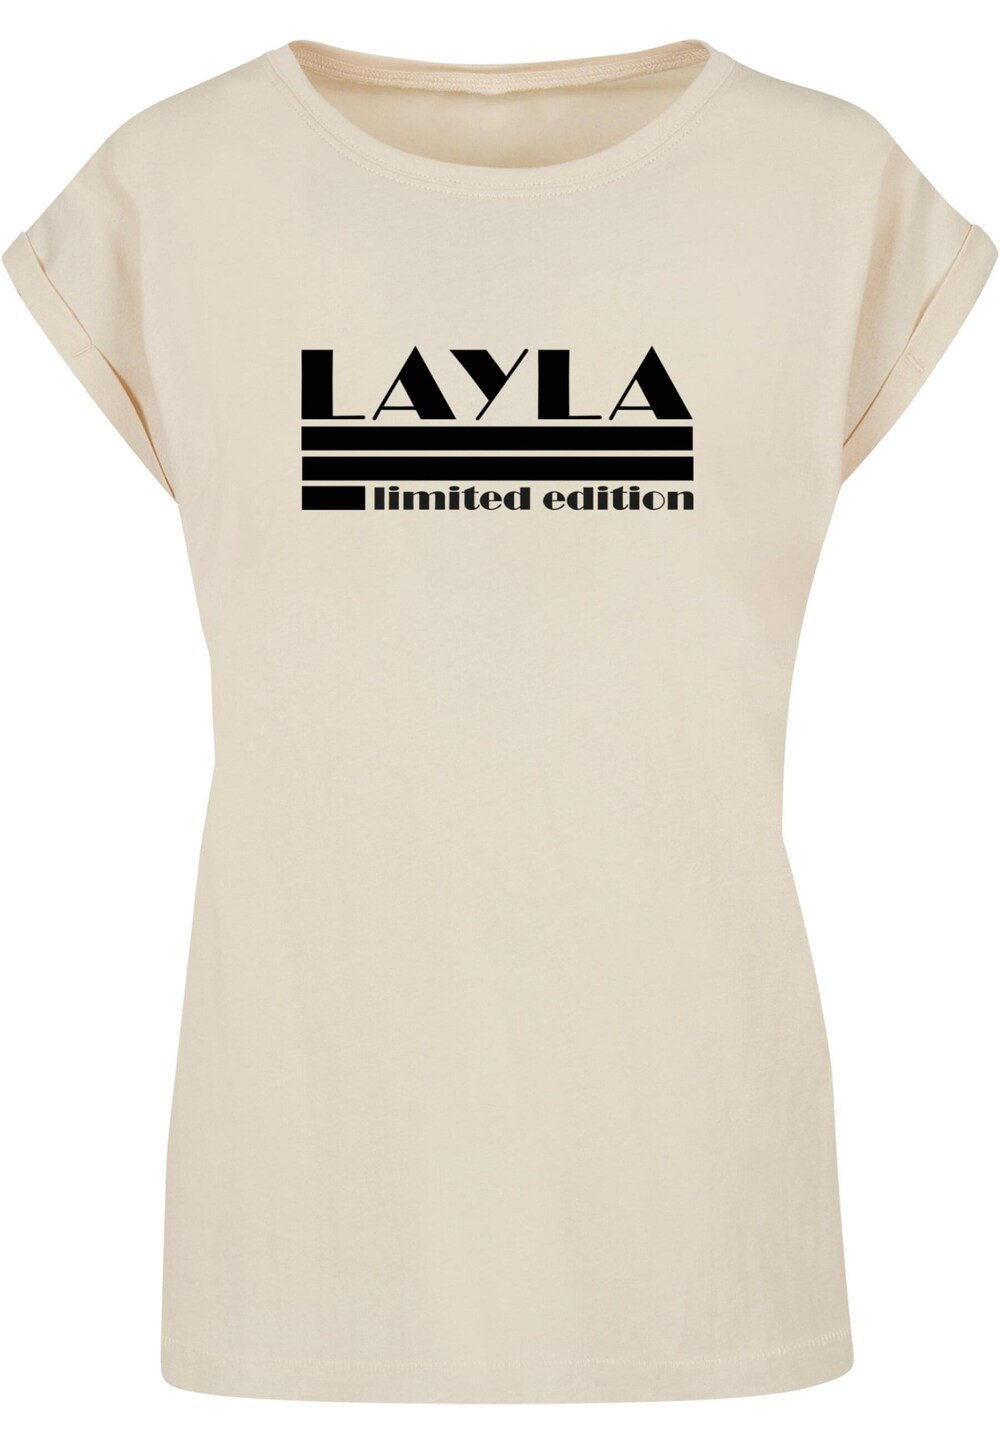 Рубашка Merchcode Layla, песок